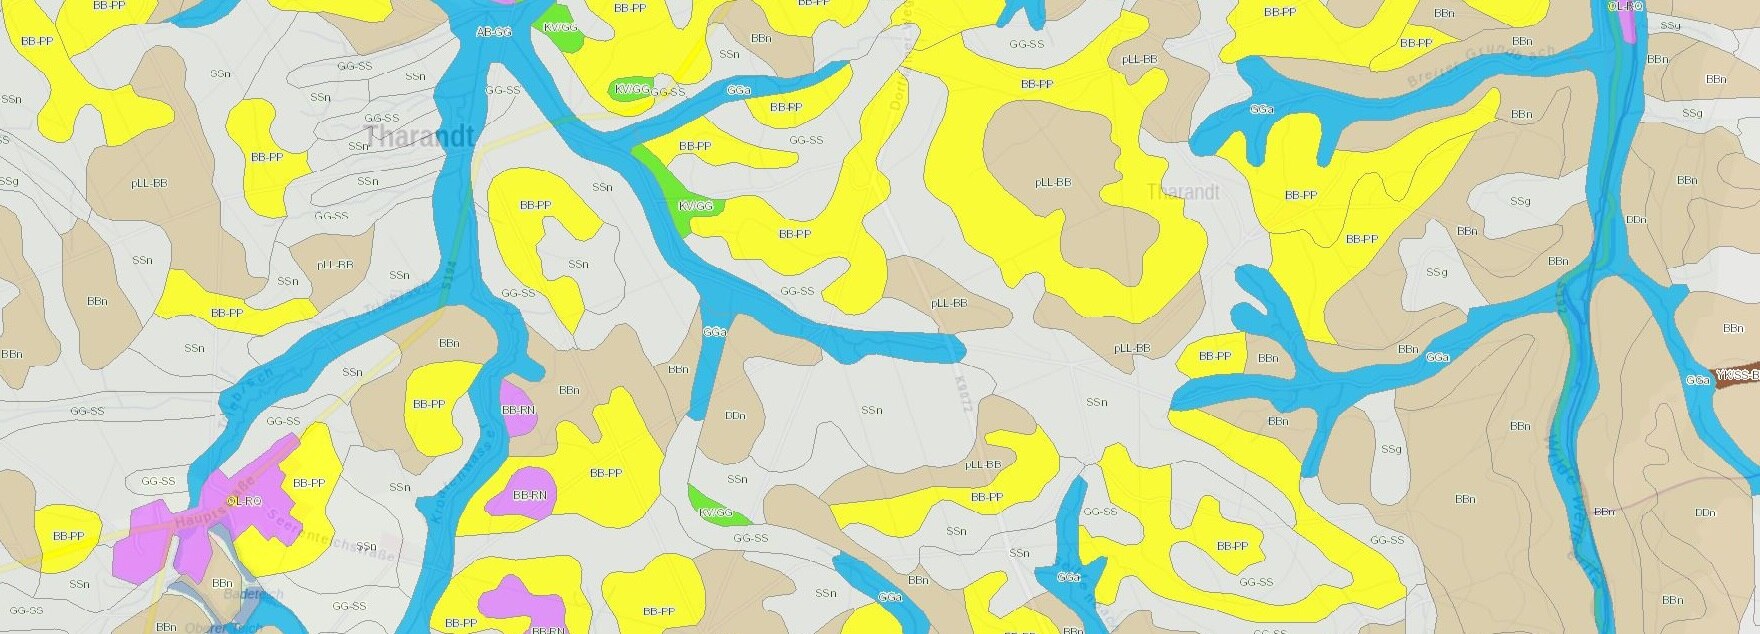 Dargestellt ist im Hintergrund eine topographische Karte, überlagert durch die Bodenkarte mit farbiger Signatur. Es sind Polygone zu sehen, die mit dem Kürzel des Leitbodentyps beschriftet sind.